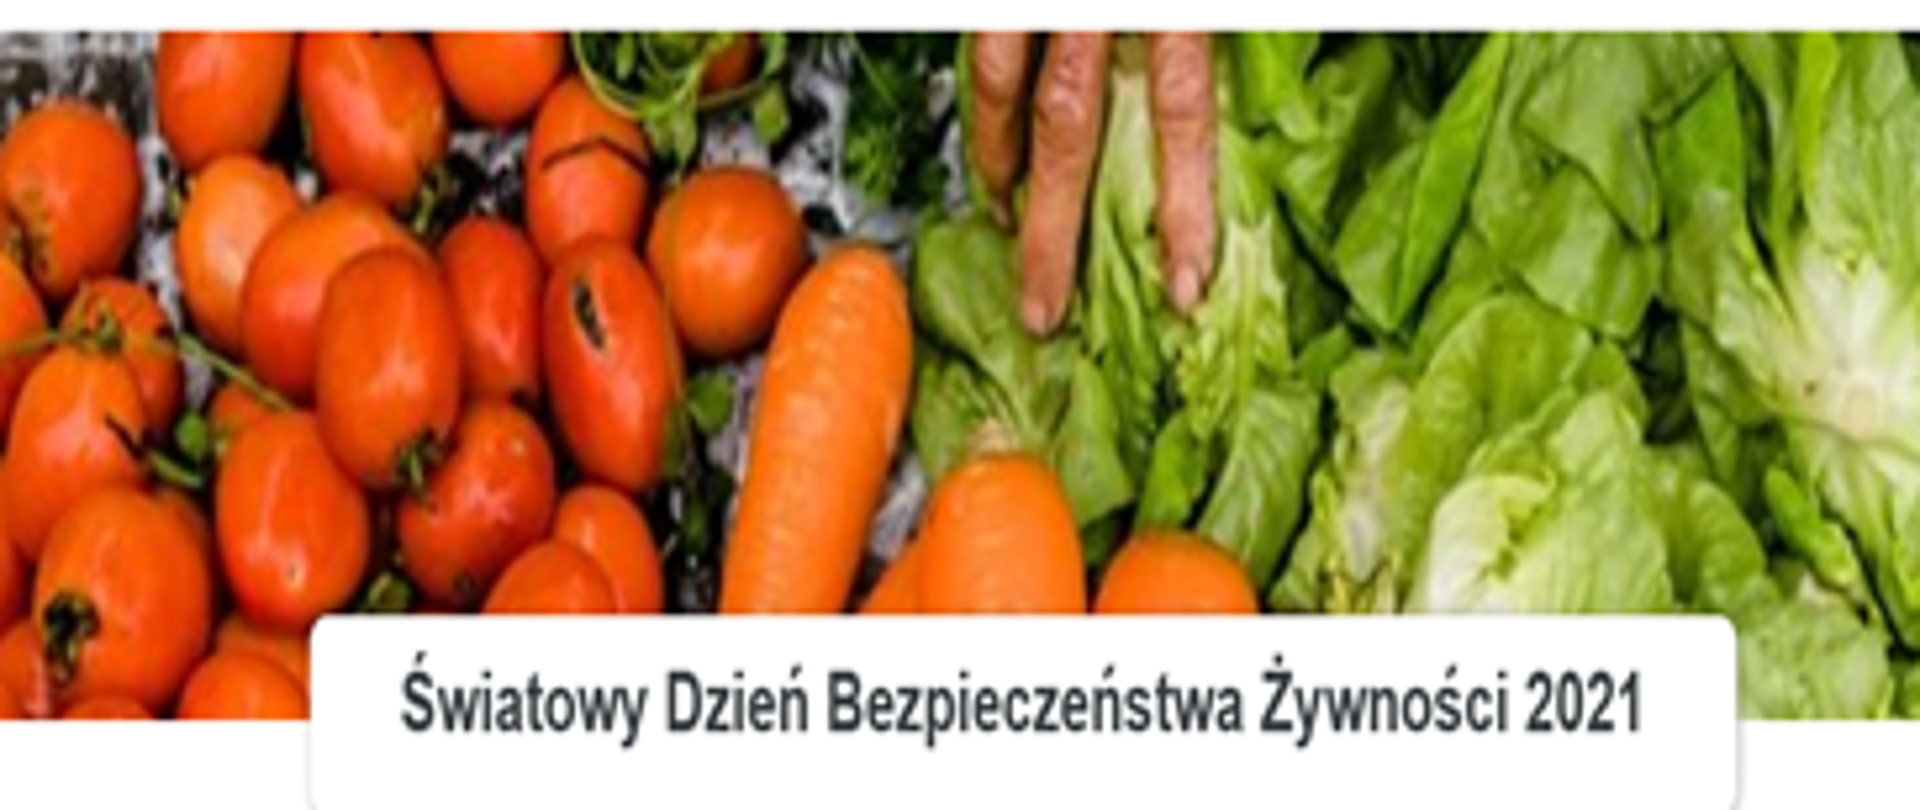 Na obrazku widoczne są warzywa: z lewej strony pomarańczowe pomidory, następnie marchewką i po prawej stronie zielona sałata. Na dole widnieje napis na białym tle czarne litery: "Światowy Dzień Bezpieczeństwa Żywności 2021.